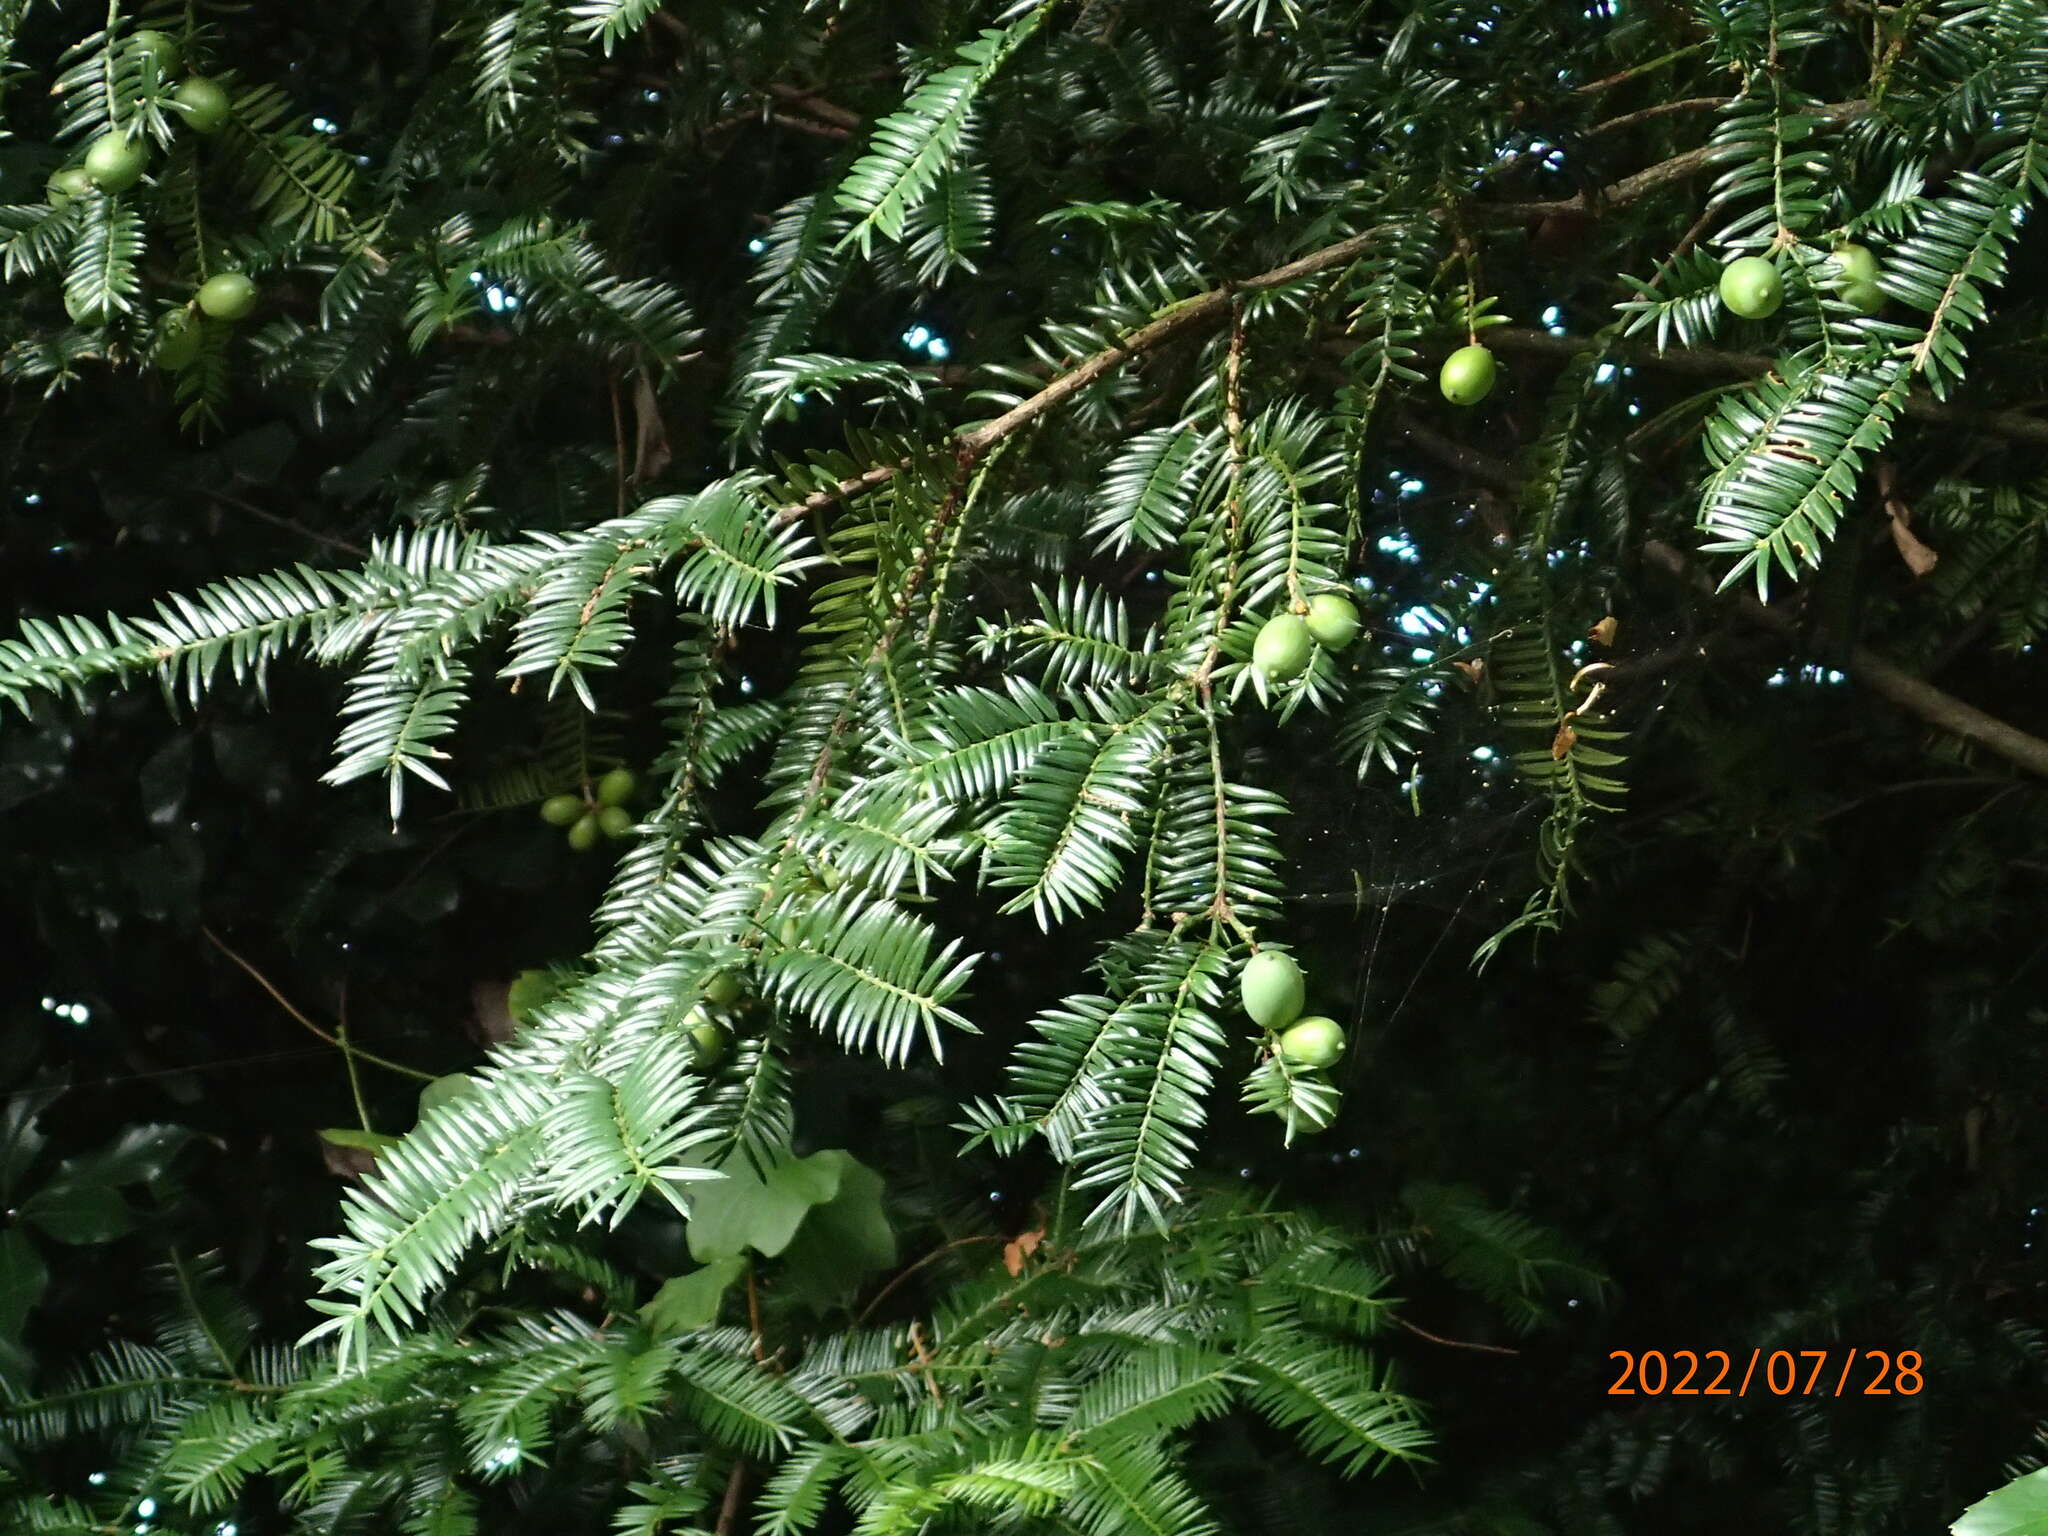 Image of Japanese Nutmeg Tree